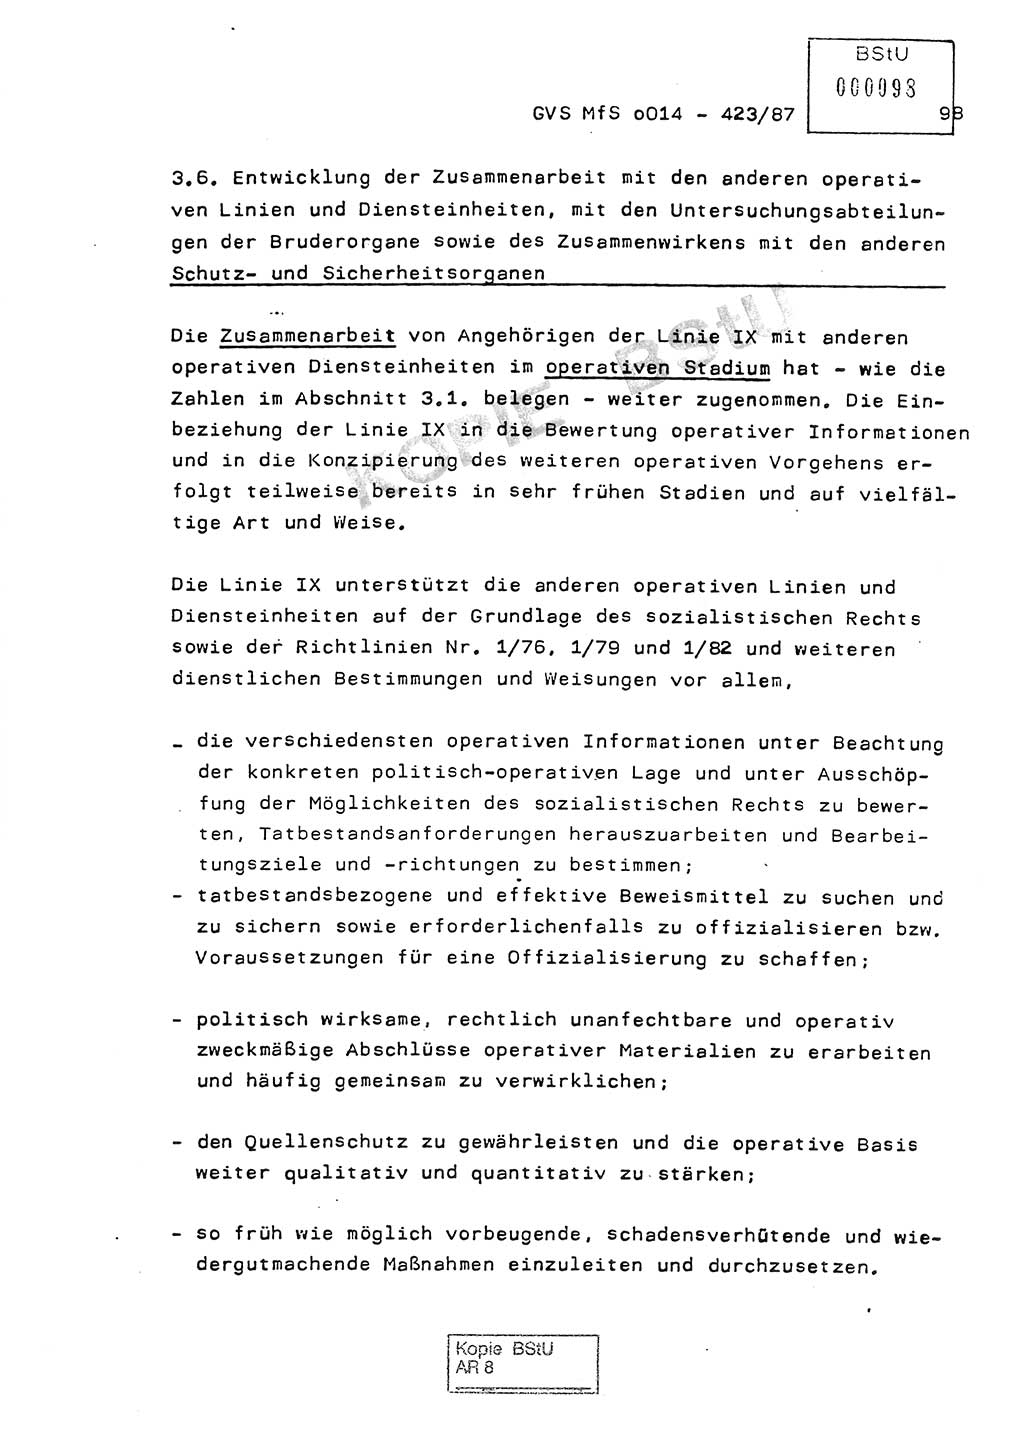 Jahresbericht der Hauptabteilung (HA) Ⅸ 1986, Einschätzung der Wirksamkeit der Untersuchungsarbeit im Jahre 1986, Ministerium für Staatssicherheit (MfS) der Deutschen Demokratischen Republik (DDR), Hauptabteilung Ⅸ, Geheime Verschlußsache (GVS) o014-423/87, Berlin 1987, Seite 98 (Einsch. MfS DDR HA Ⅸ GVS o014-423/87 1986, S. 98)